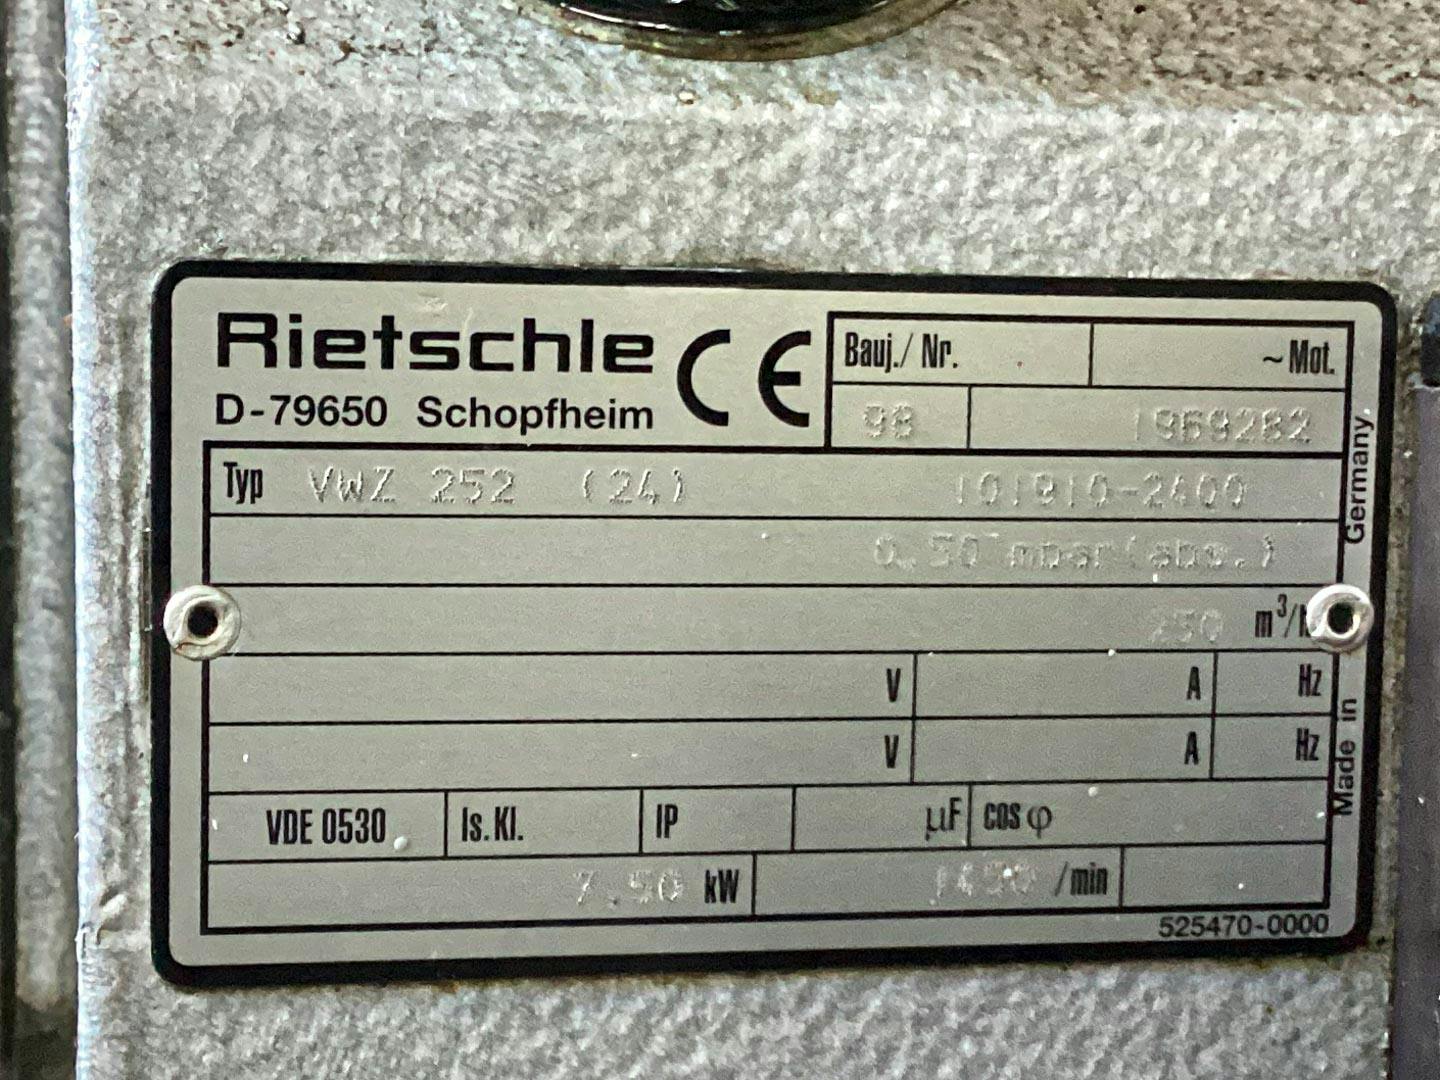 Rietschle VWZ 252 (24) - Bomba de vácuo - image 7